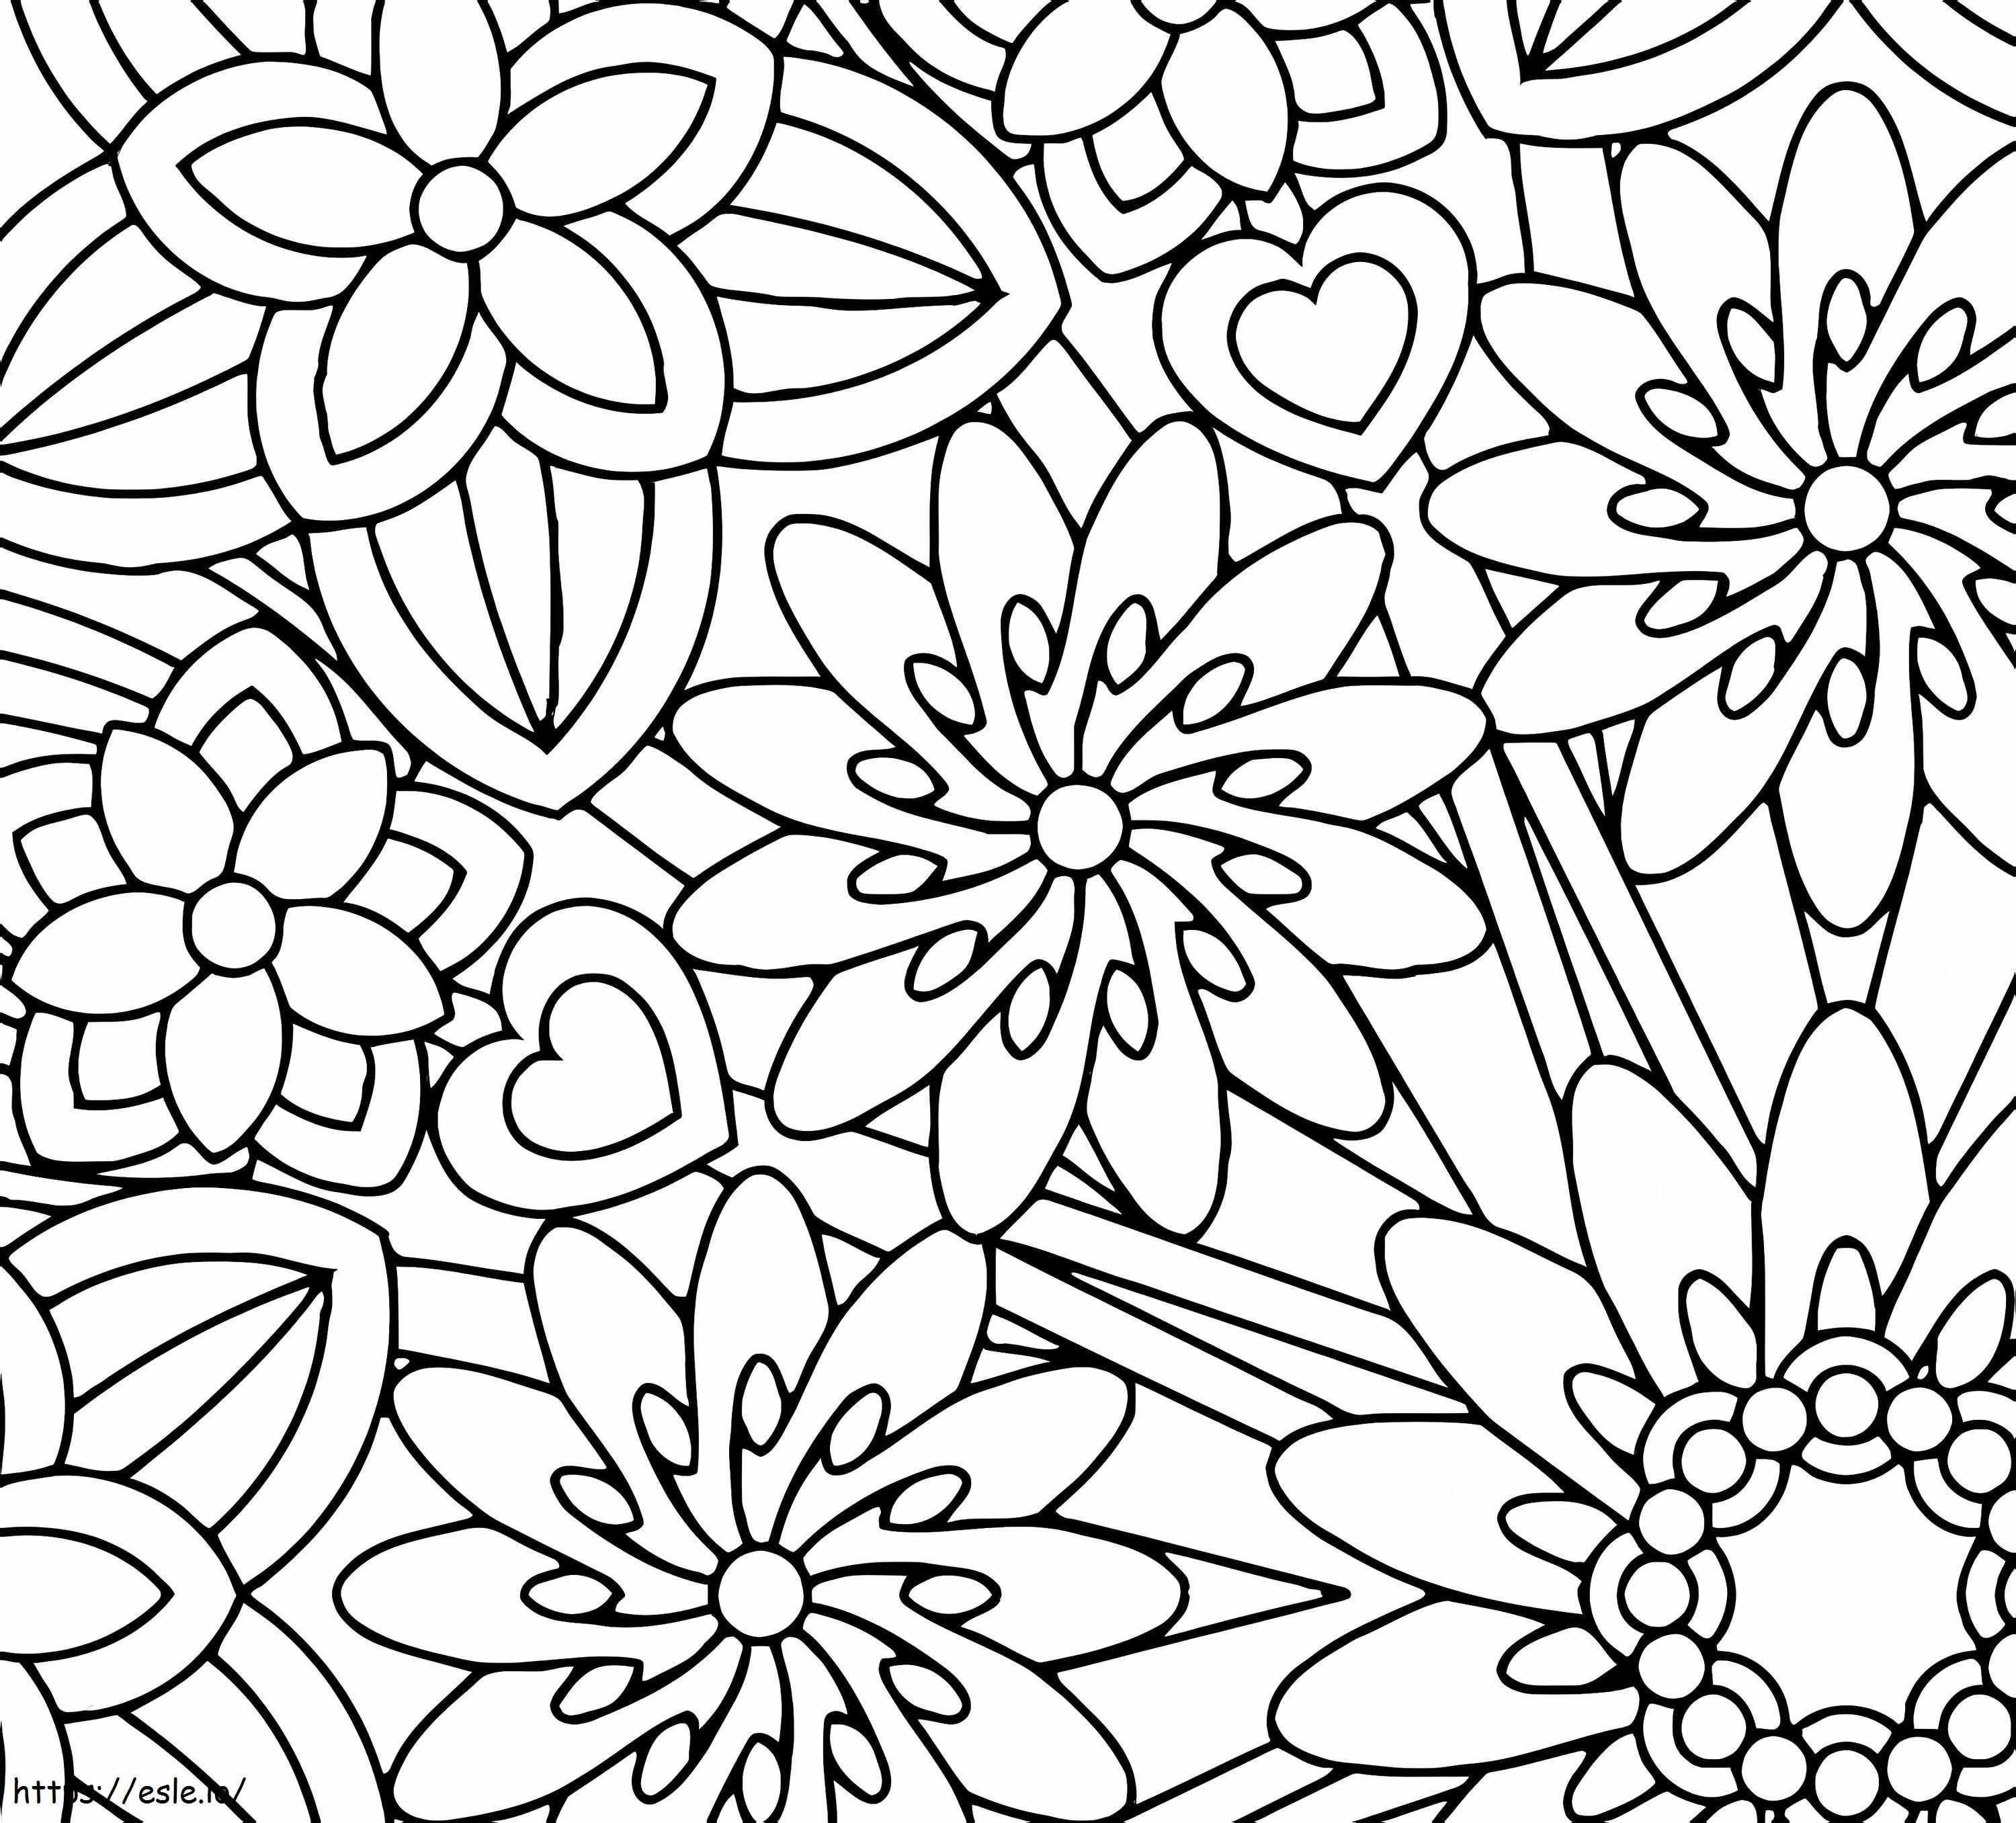 Coloriage Pleine conscience des fleurs à imprimer dessin